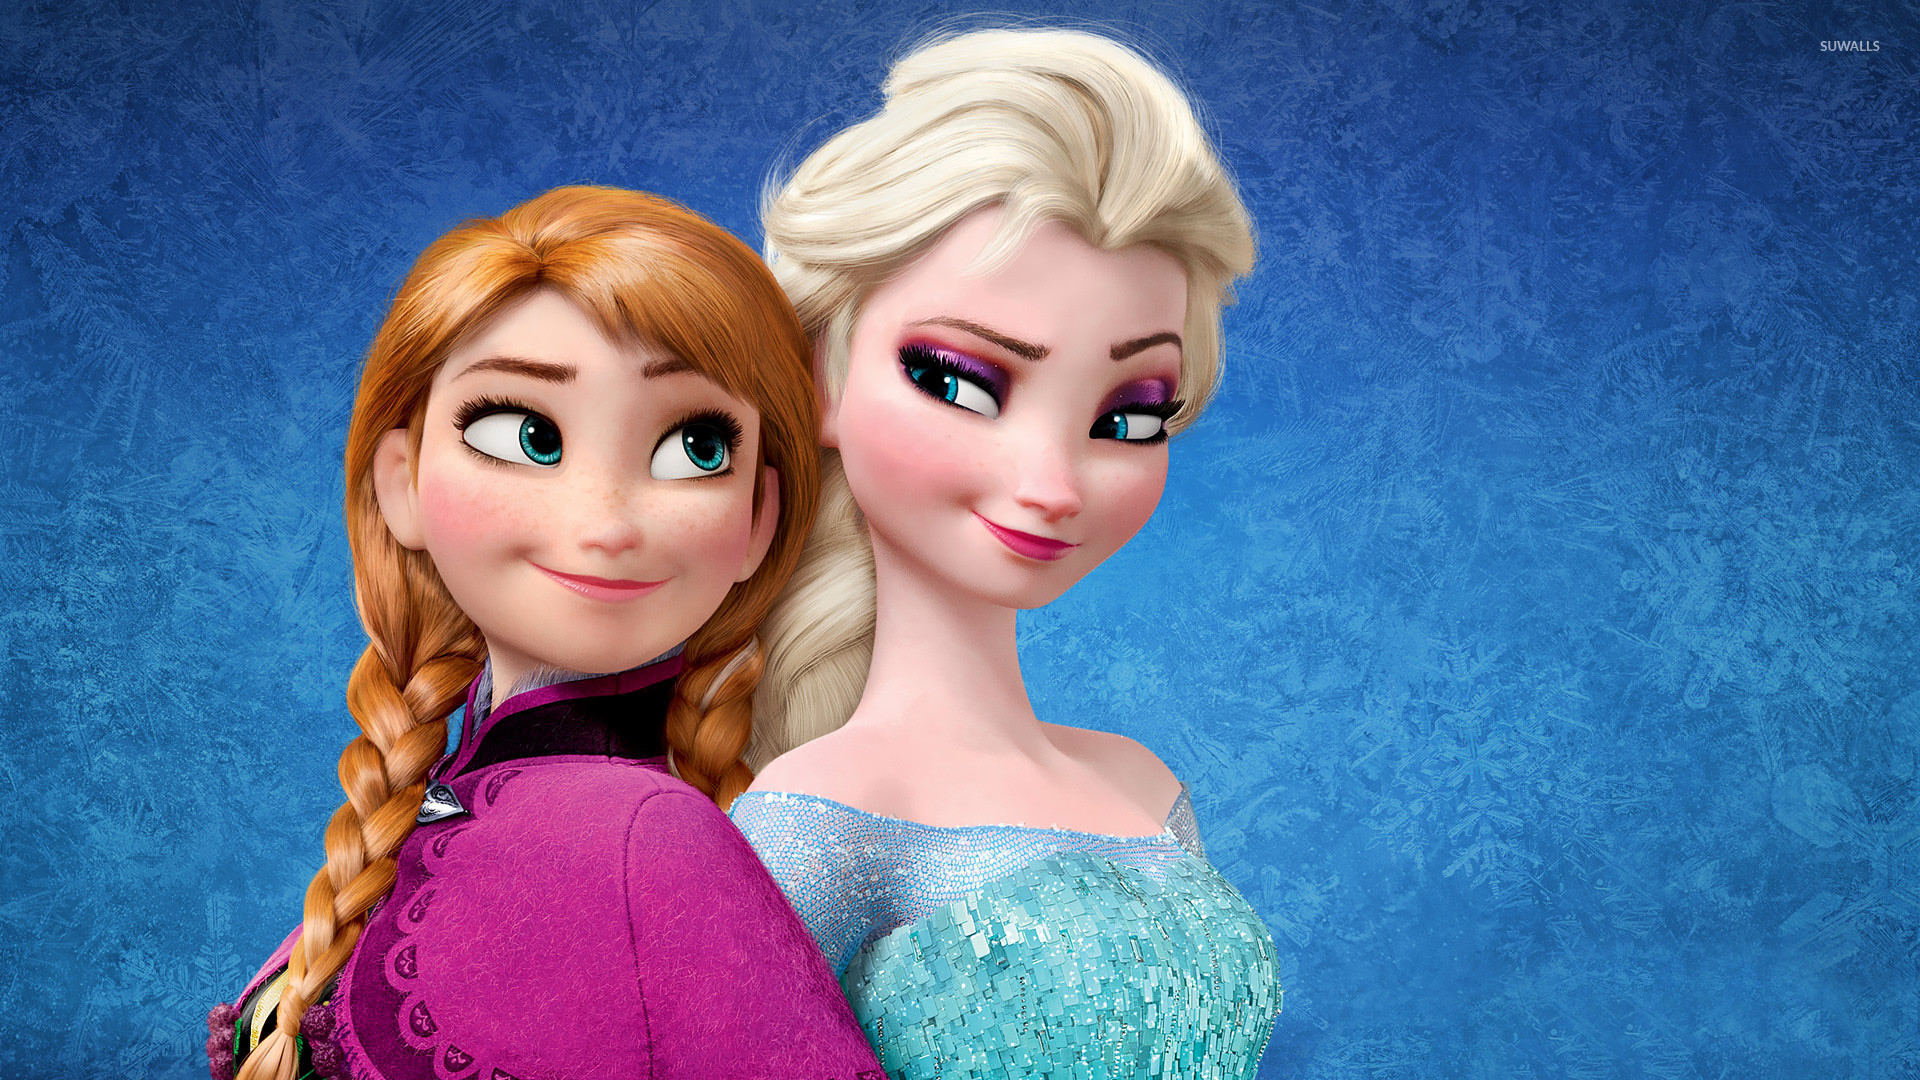 1920x1080 Elsa and Anna - Frozen wallpaper  jpg